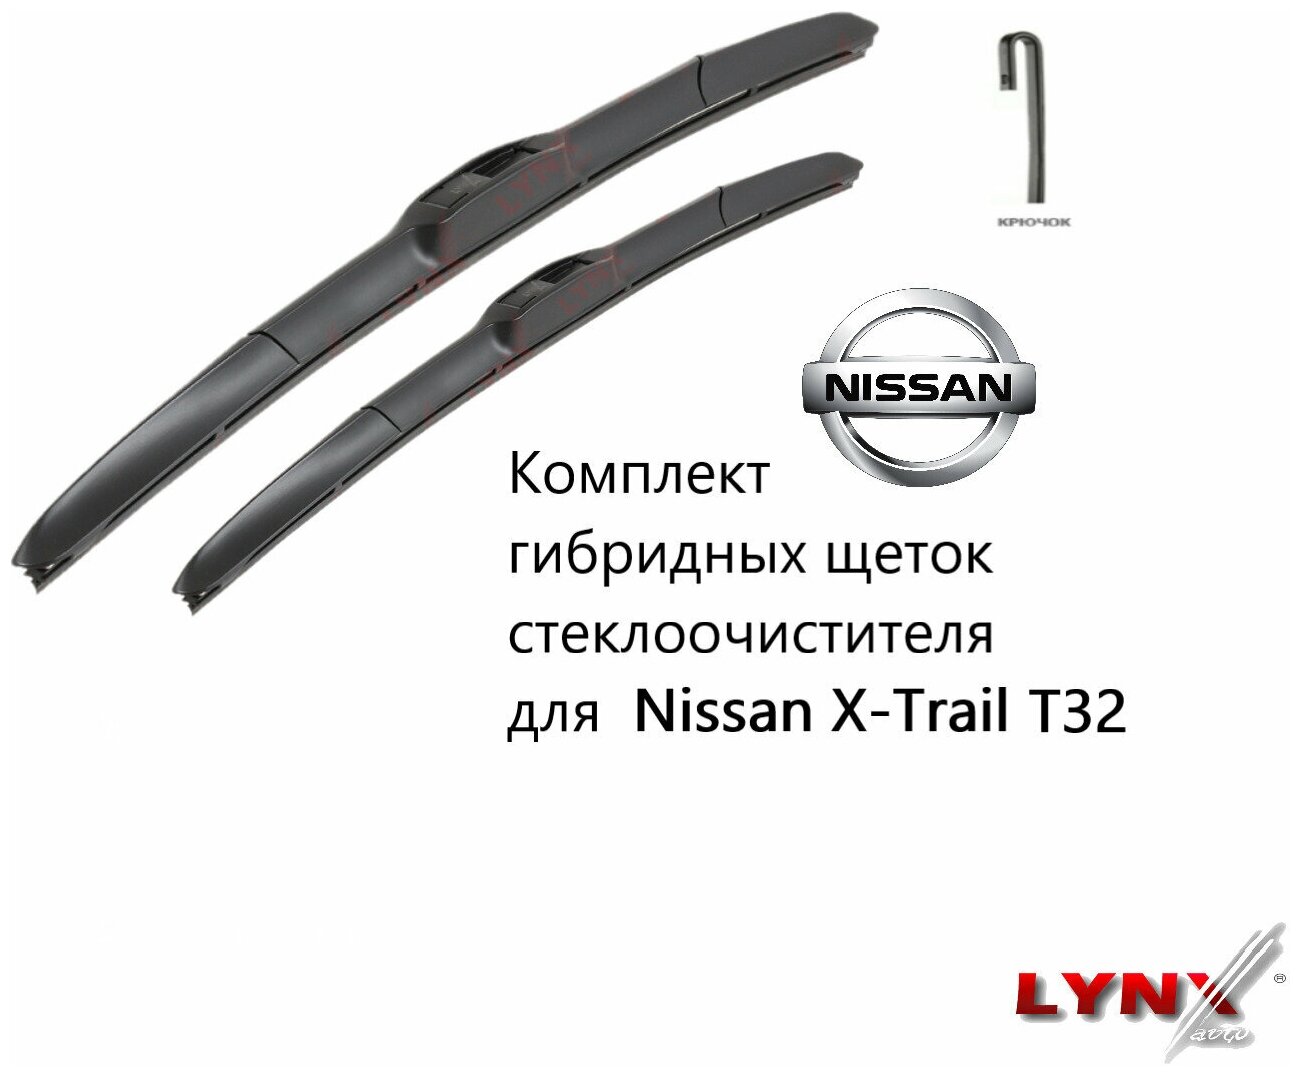 Комплект гибридных щеток стеклоочистителя LYNX для Nissan X-Trail T32  650+400мм для ниссан икстрейл